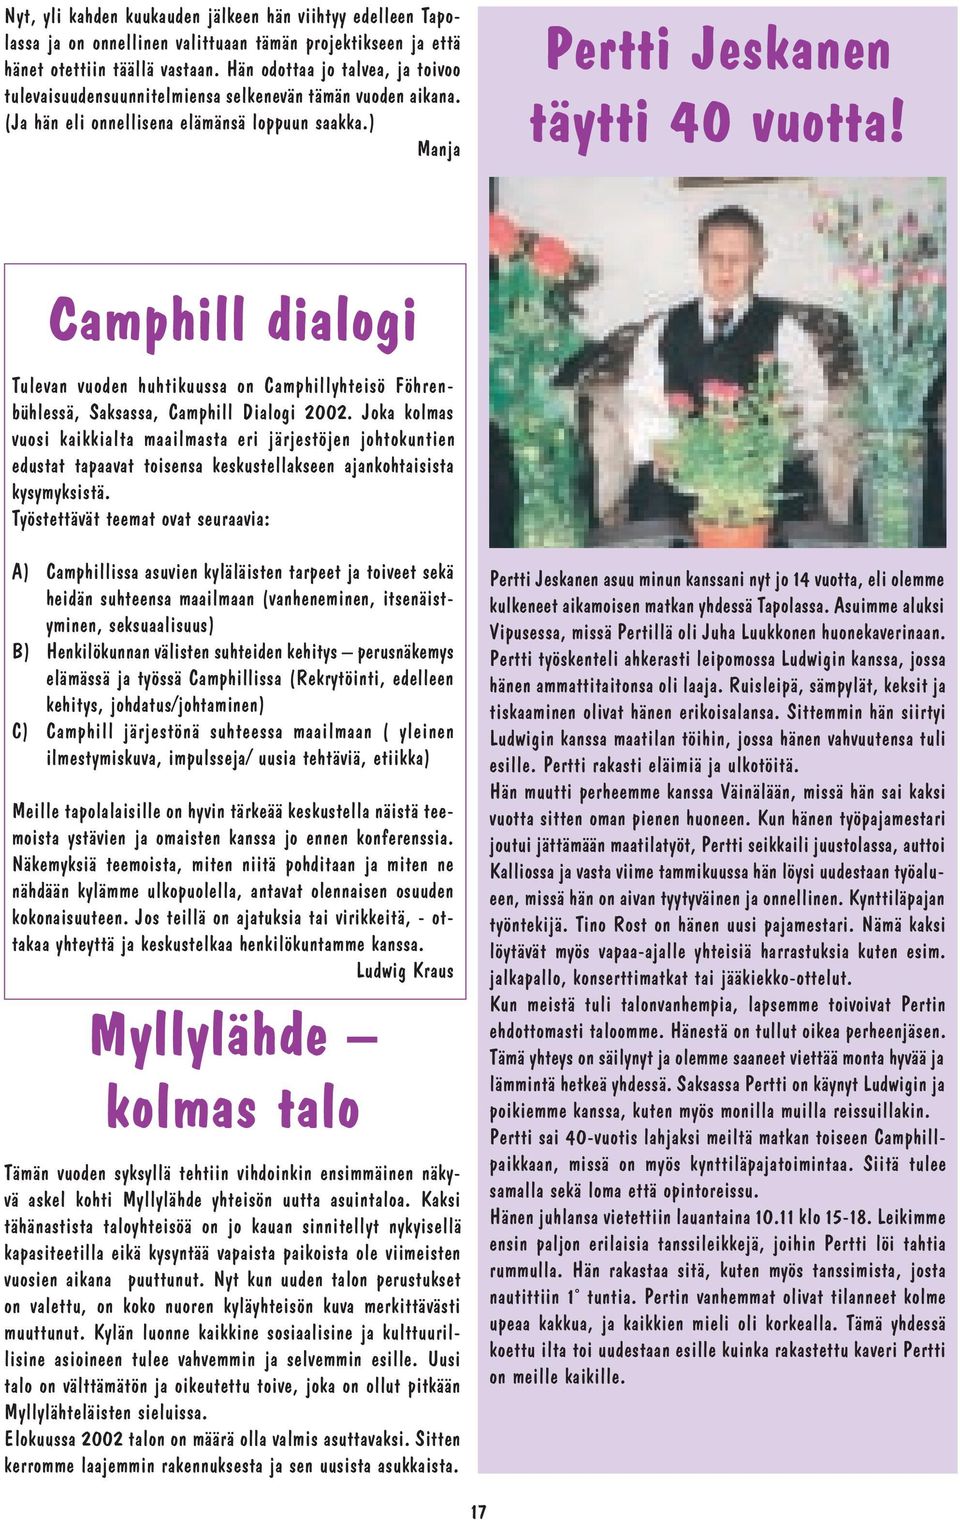 Camphill dialogi Tulevan vuoden huhtikuussa on Camphillyhteisö Föhrenbühlessä, Saksassa, Camphill Dialogi 2002.